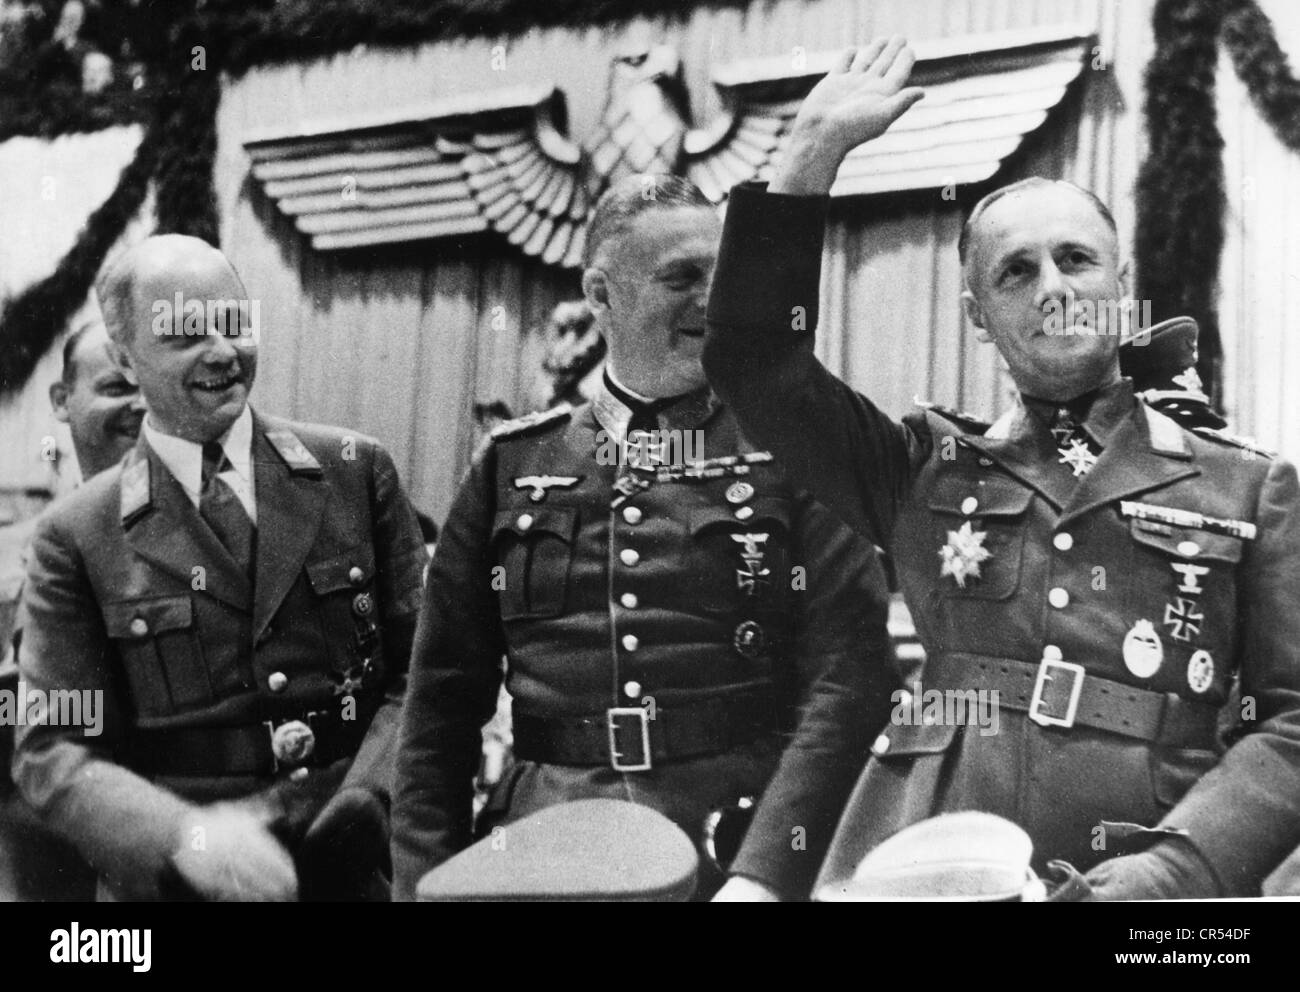 Rommel, Erwin, 15.11.1891 - 14.10.1944, generale tedesco, a mezza lunghezza, con Artur Görlitzer, maresciallo Wilhelm Keitel, ospite dello stand VIP poco prima di un discorso pronunciato da Hitler, Sportpalast, Berlino, 30.9.1942, Foto Stock